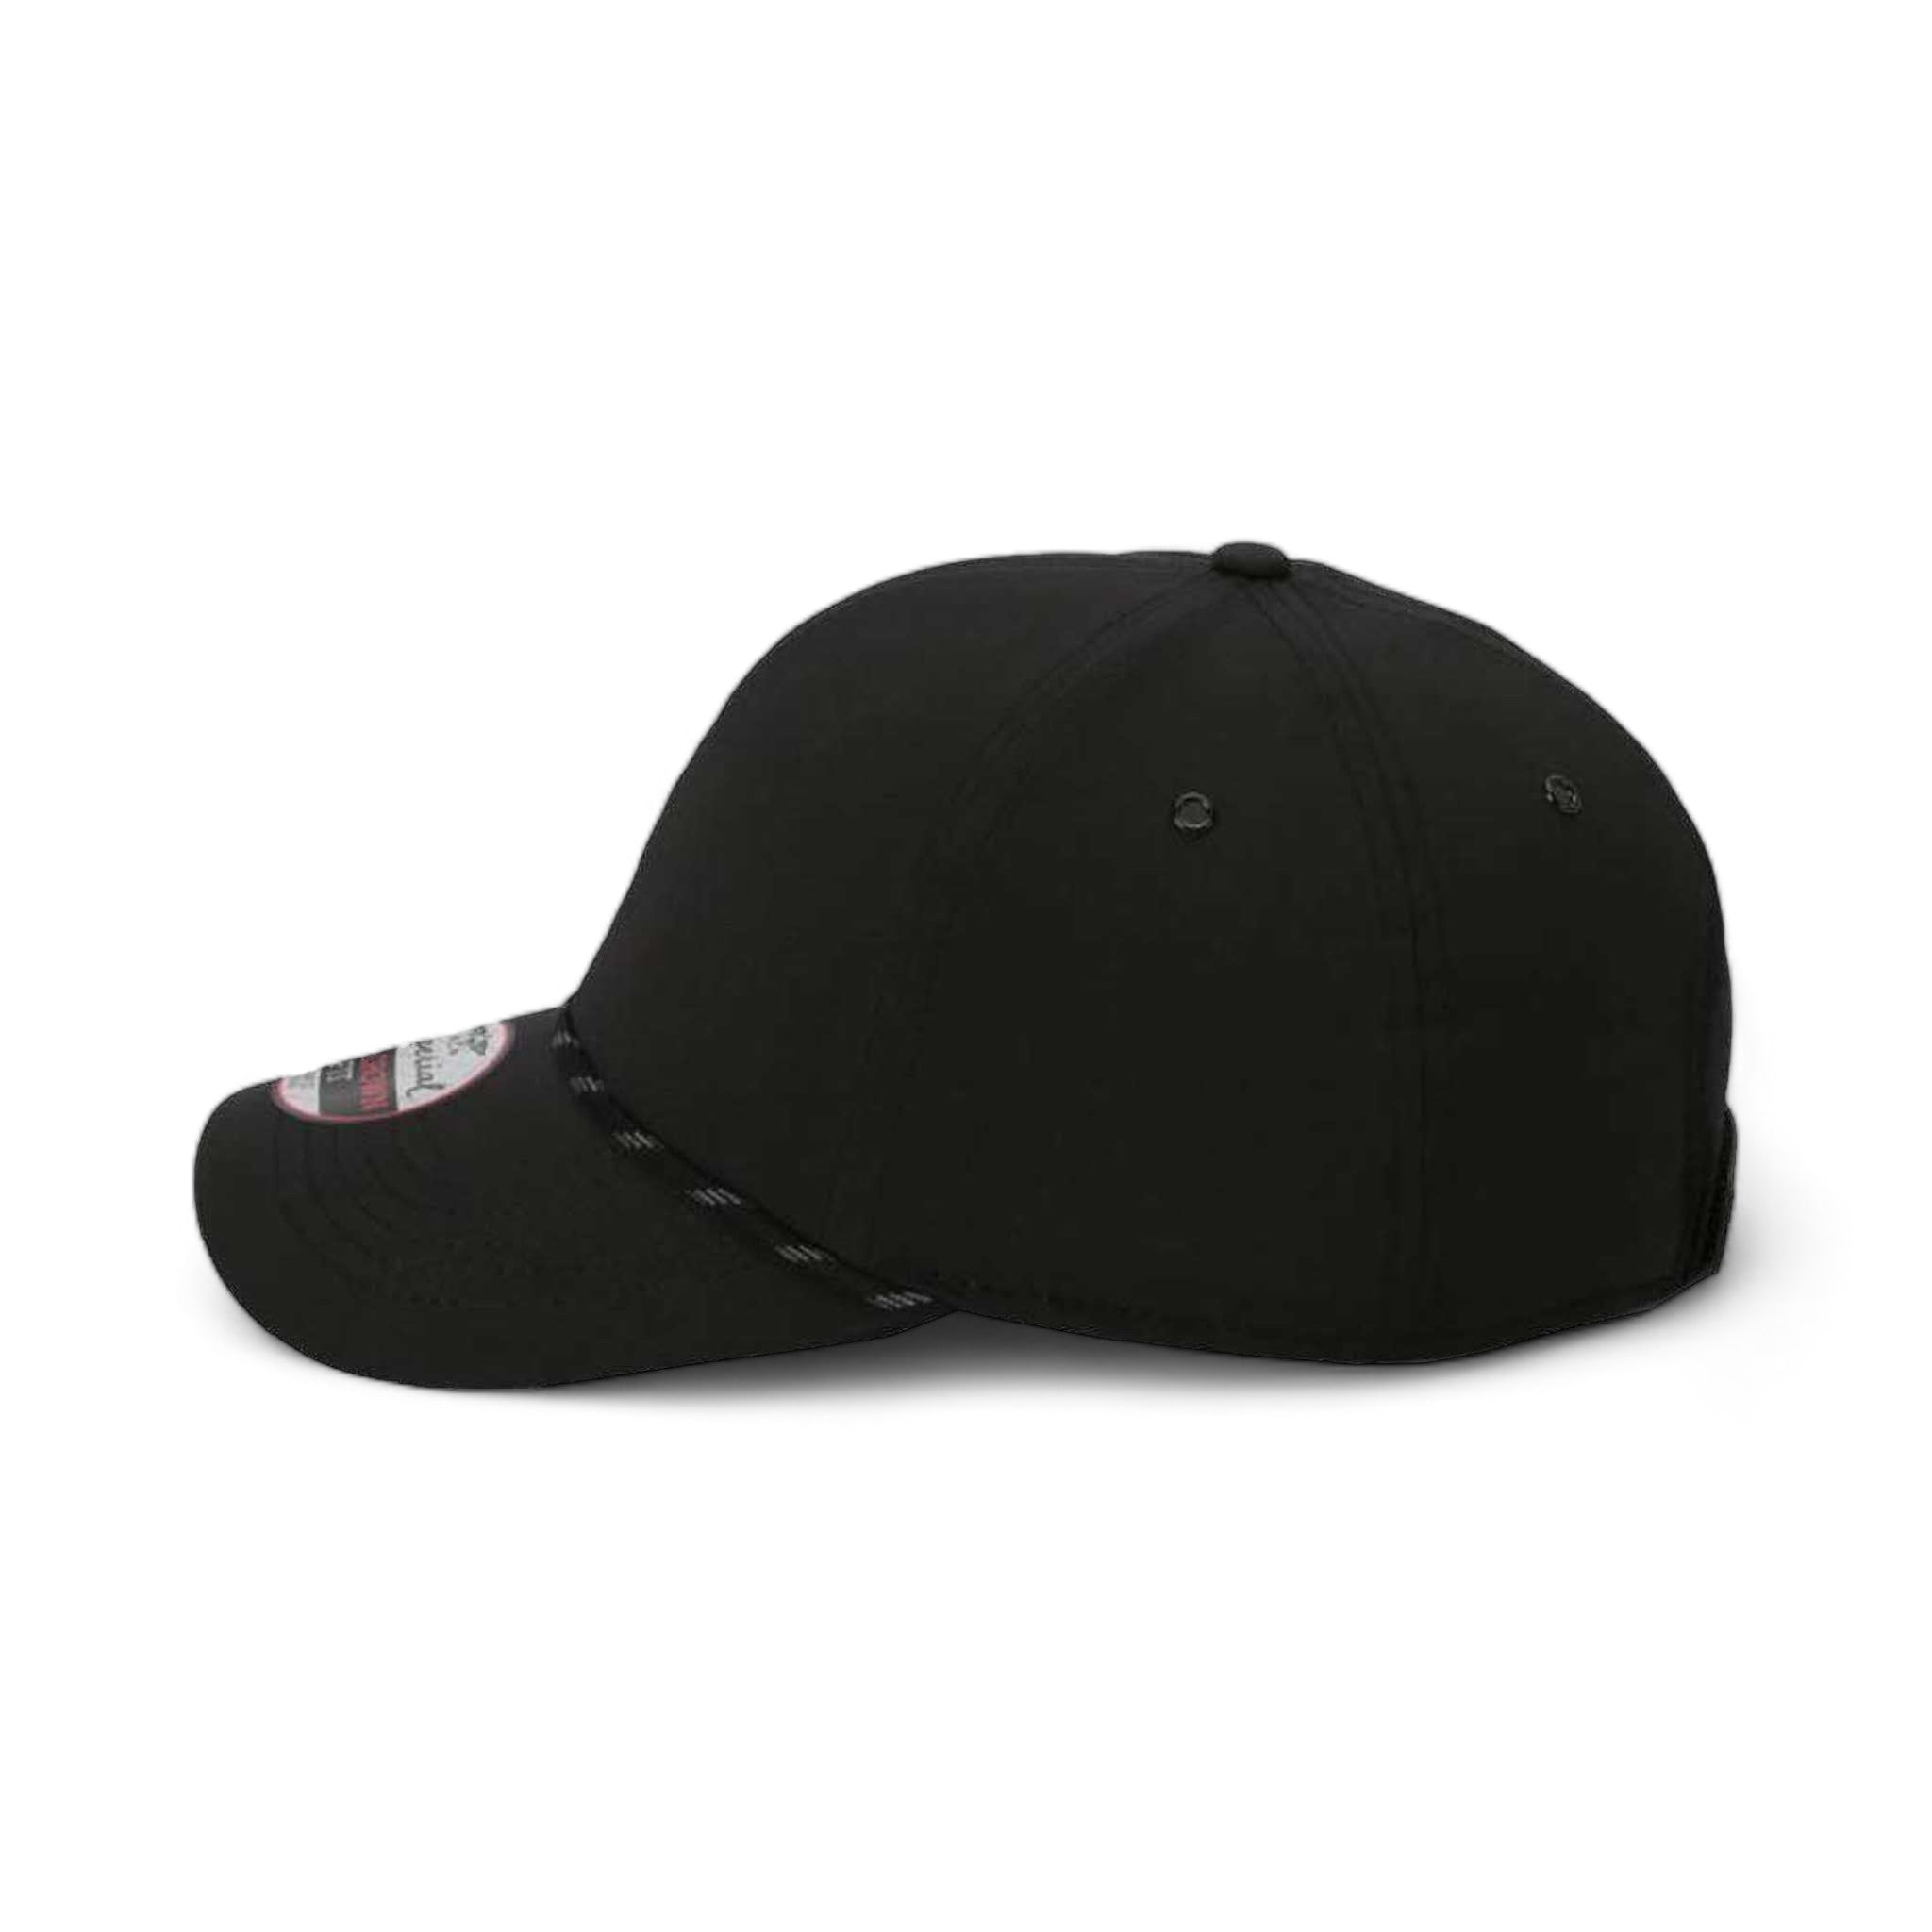 Side view of Imperial 6054 custom hat in black